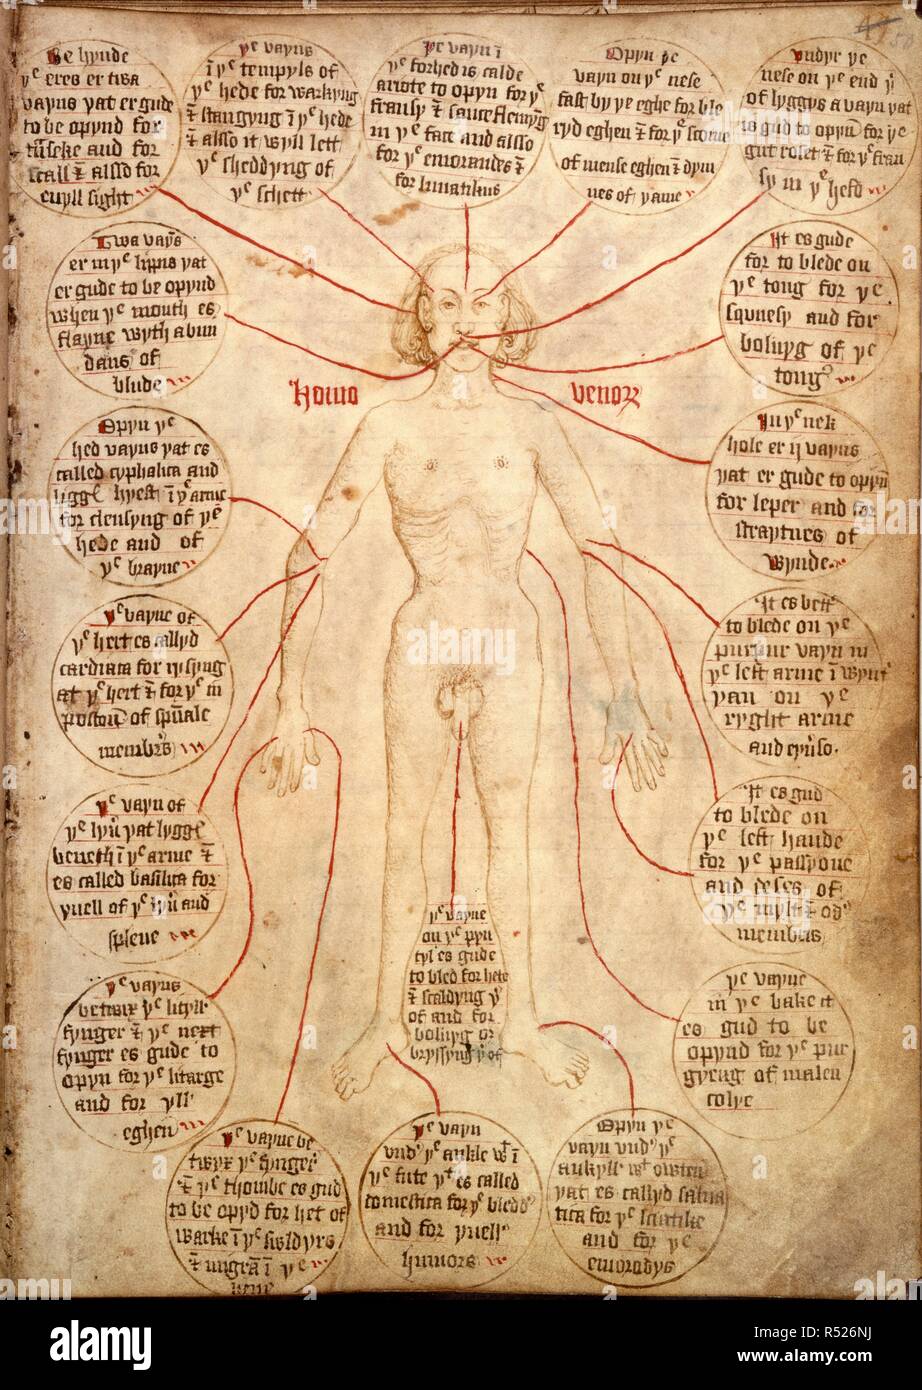 Vena o derramamiento de sangre Man. Libro del gremio de los CIRUJANOS BARBEROS de York. York, 1486, con adiciones en 1768. (Todo el folio) un diagrama anatómico de una figura masculina, con instrucciones para el sangrado en las venas diferentes. Imagen tomada del libro del gremio de los CIRUJANOS BARBEROS de York. Originalmente publicado/producida en York, 1486, con adiciones en 1768. . Fuente: Egerton 2572, f.50. Idioma: Inglés y Latín. Foto de stock